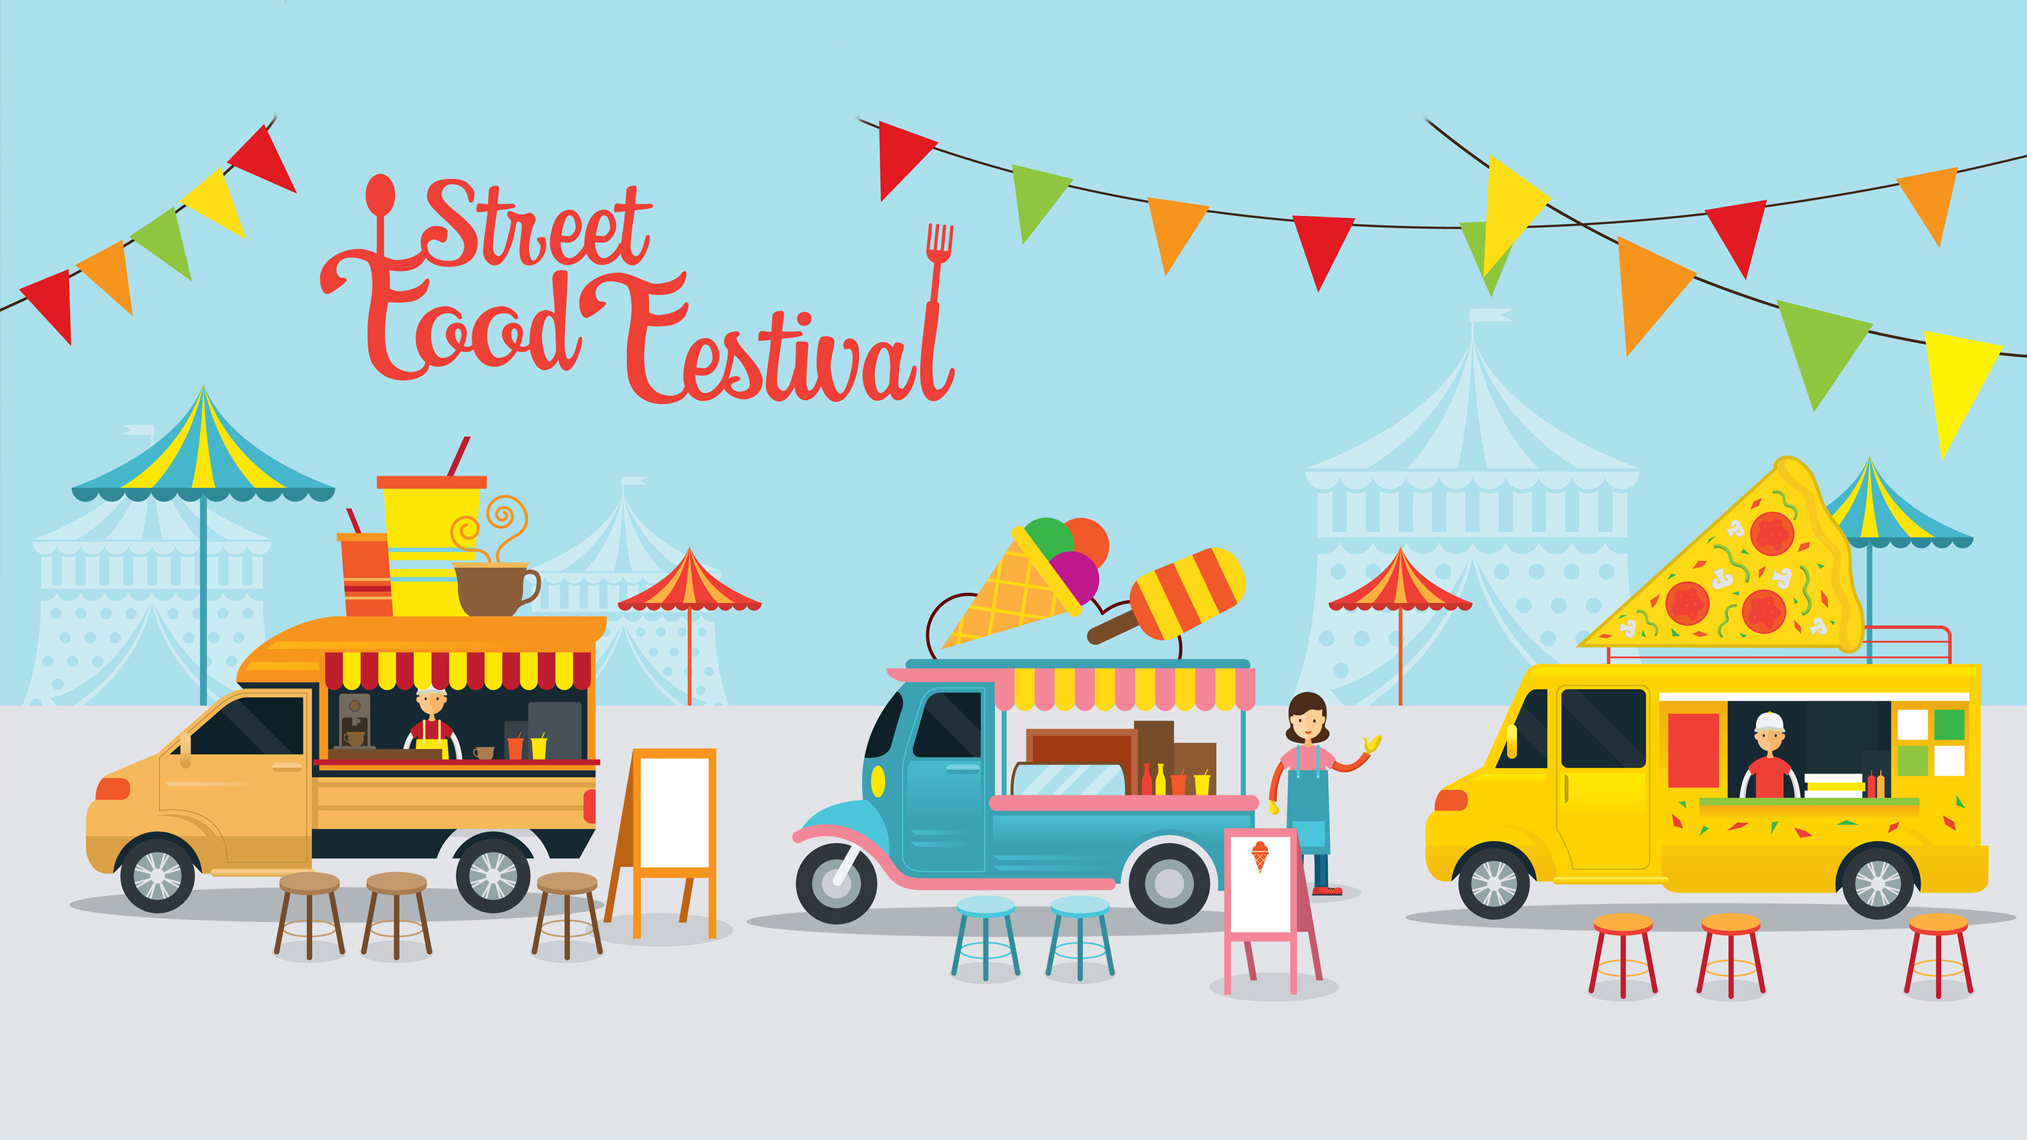 Street Food Festival als Zeichnung